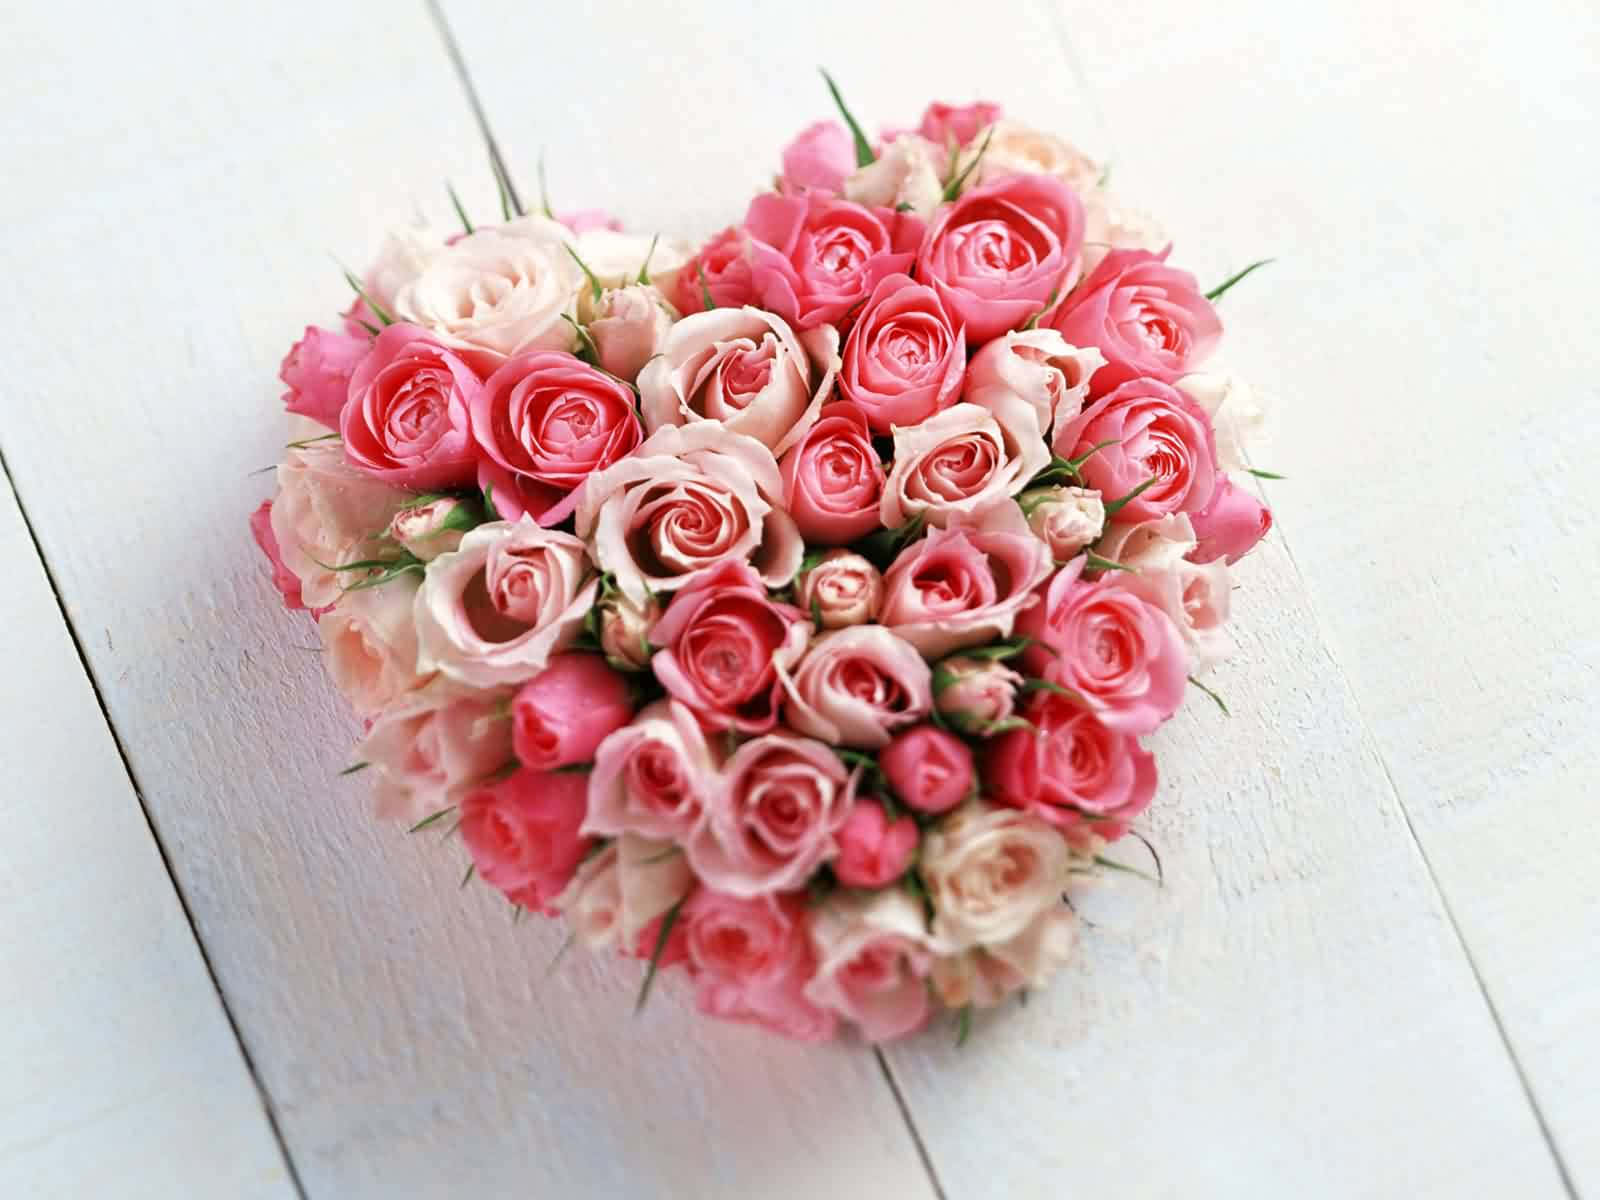 Umadisposição Em Forma De Coração De Rosas Cor-de-rosa E Brancas.